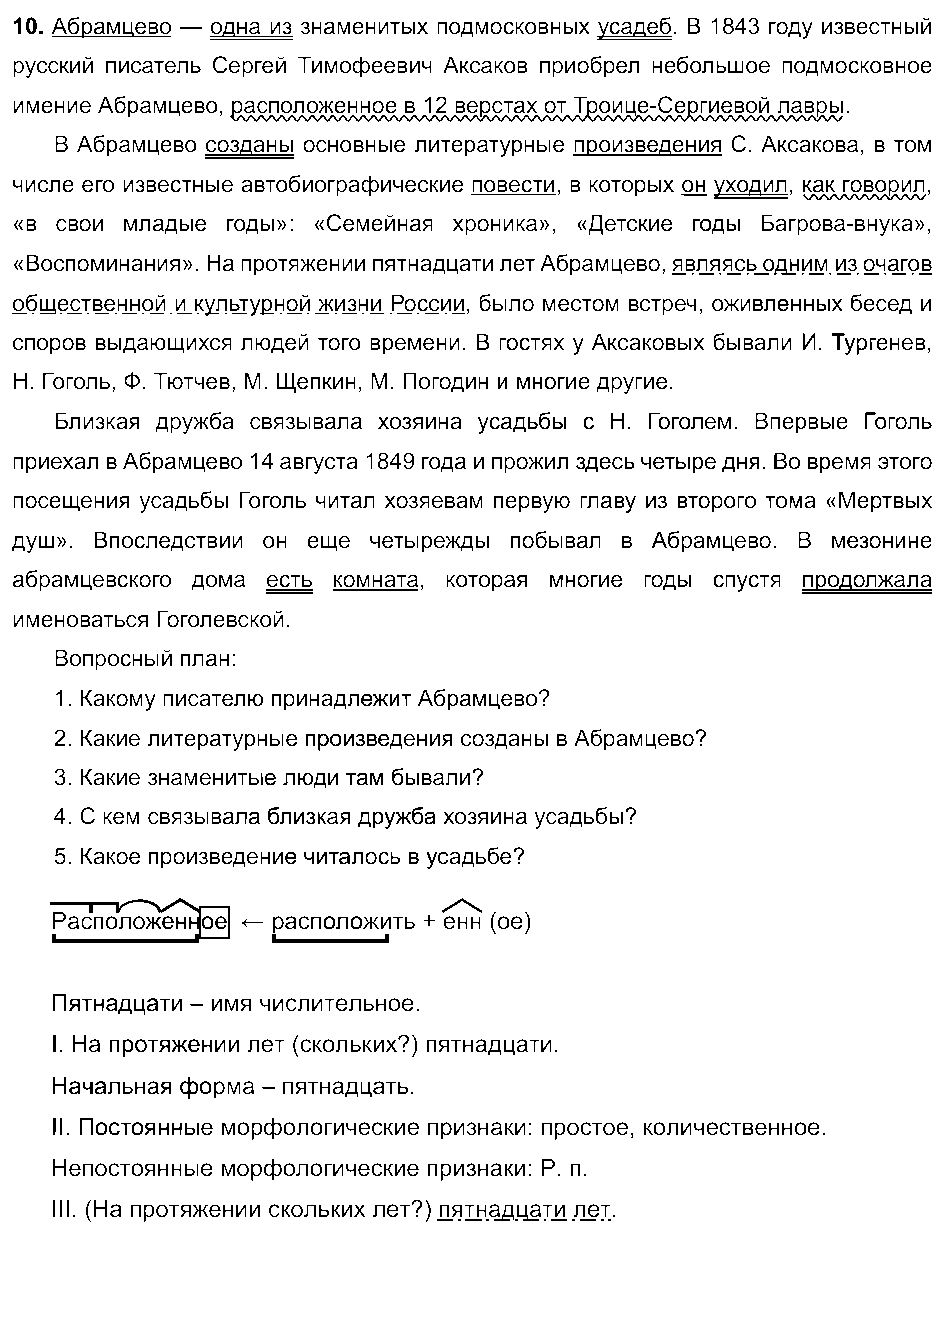 ГДЗ Русский язык 8 класс - 10